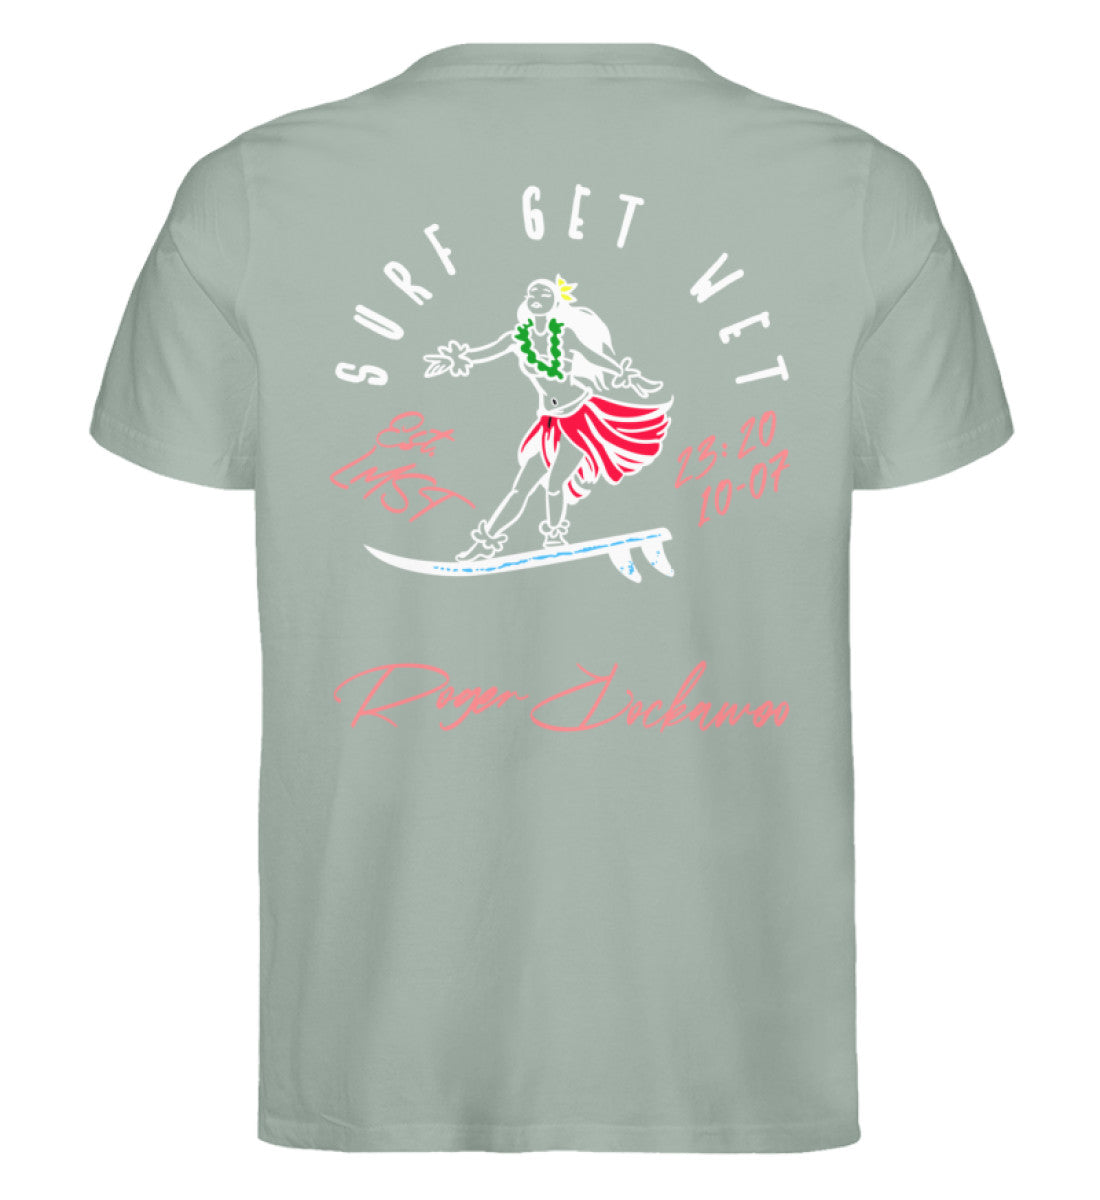 Aloe farbiges T-Shirt für Frauen und Männer bedruckt mit dem Design der Roger Rockawoo surf get wet